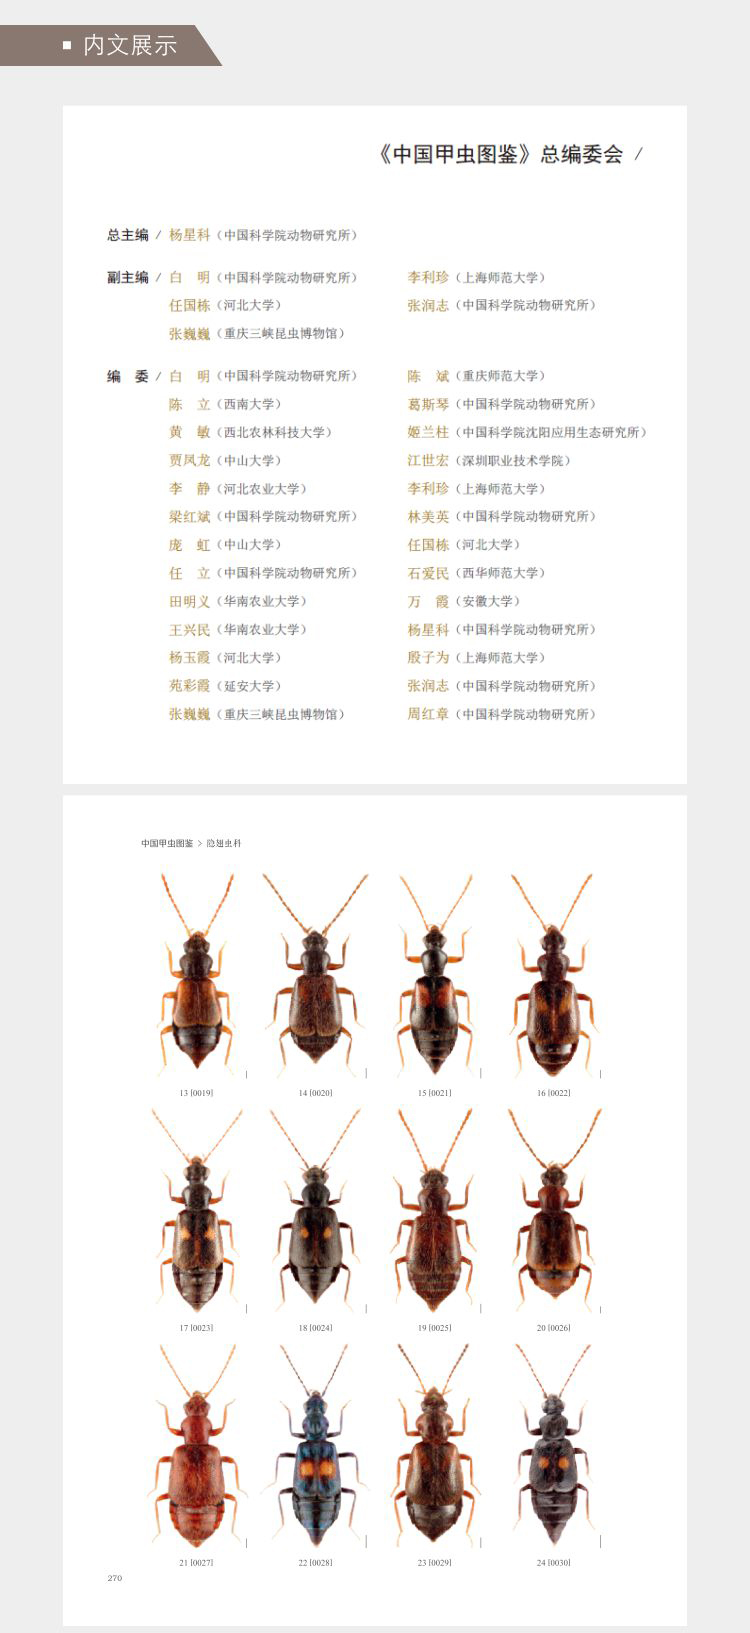 中国甲虫図鑑-隠翅虫科